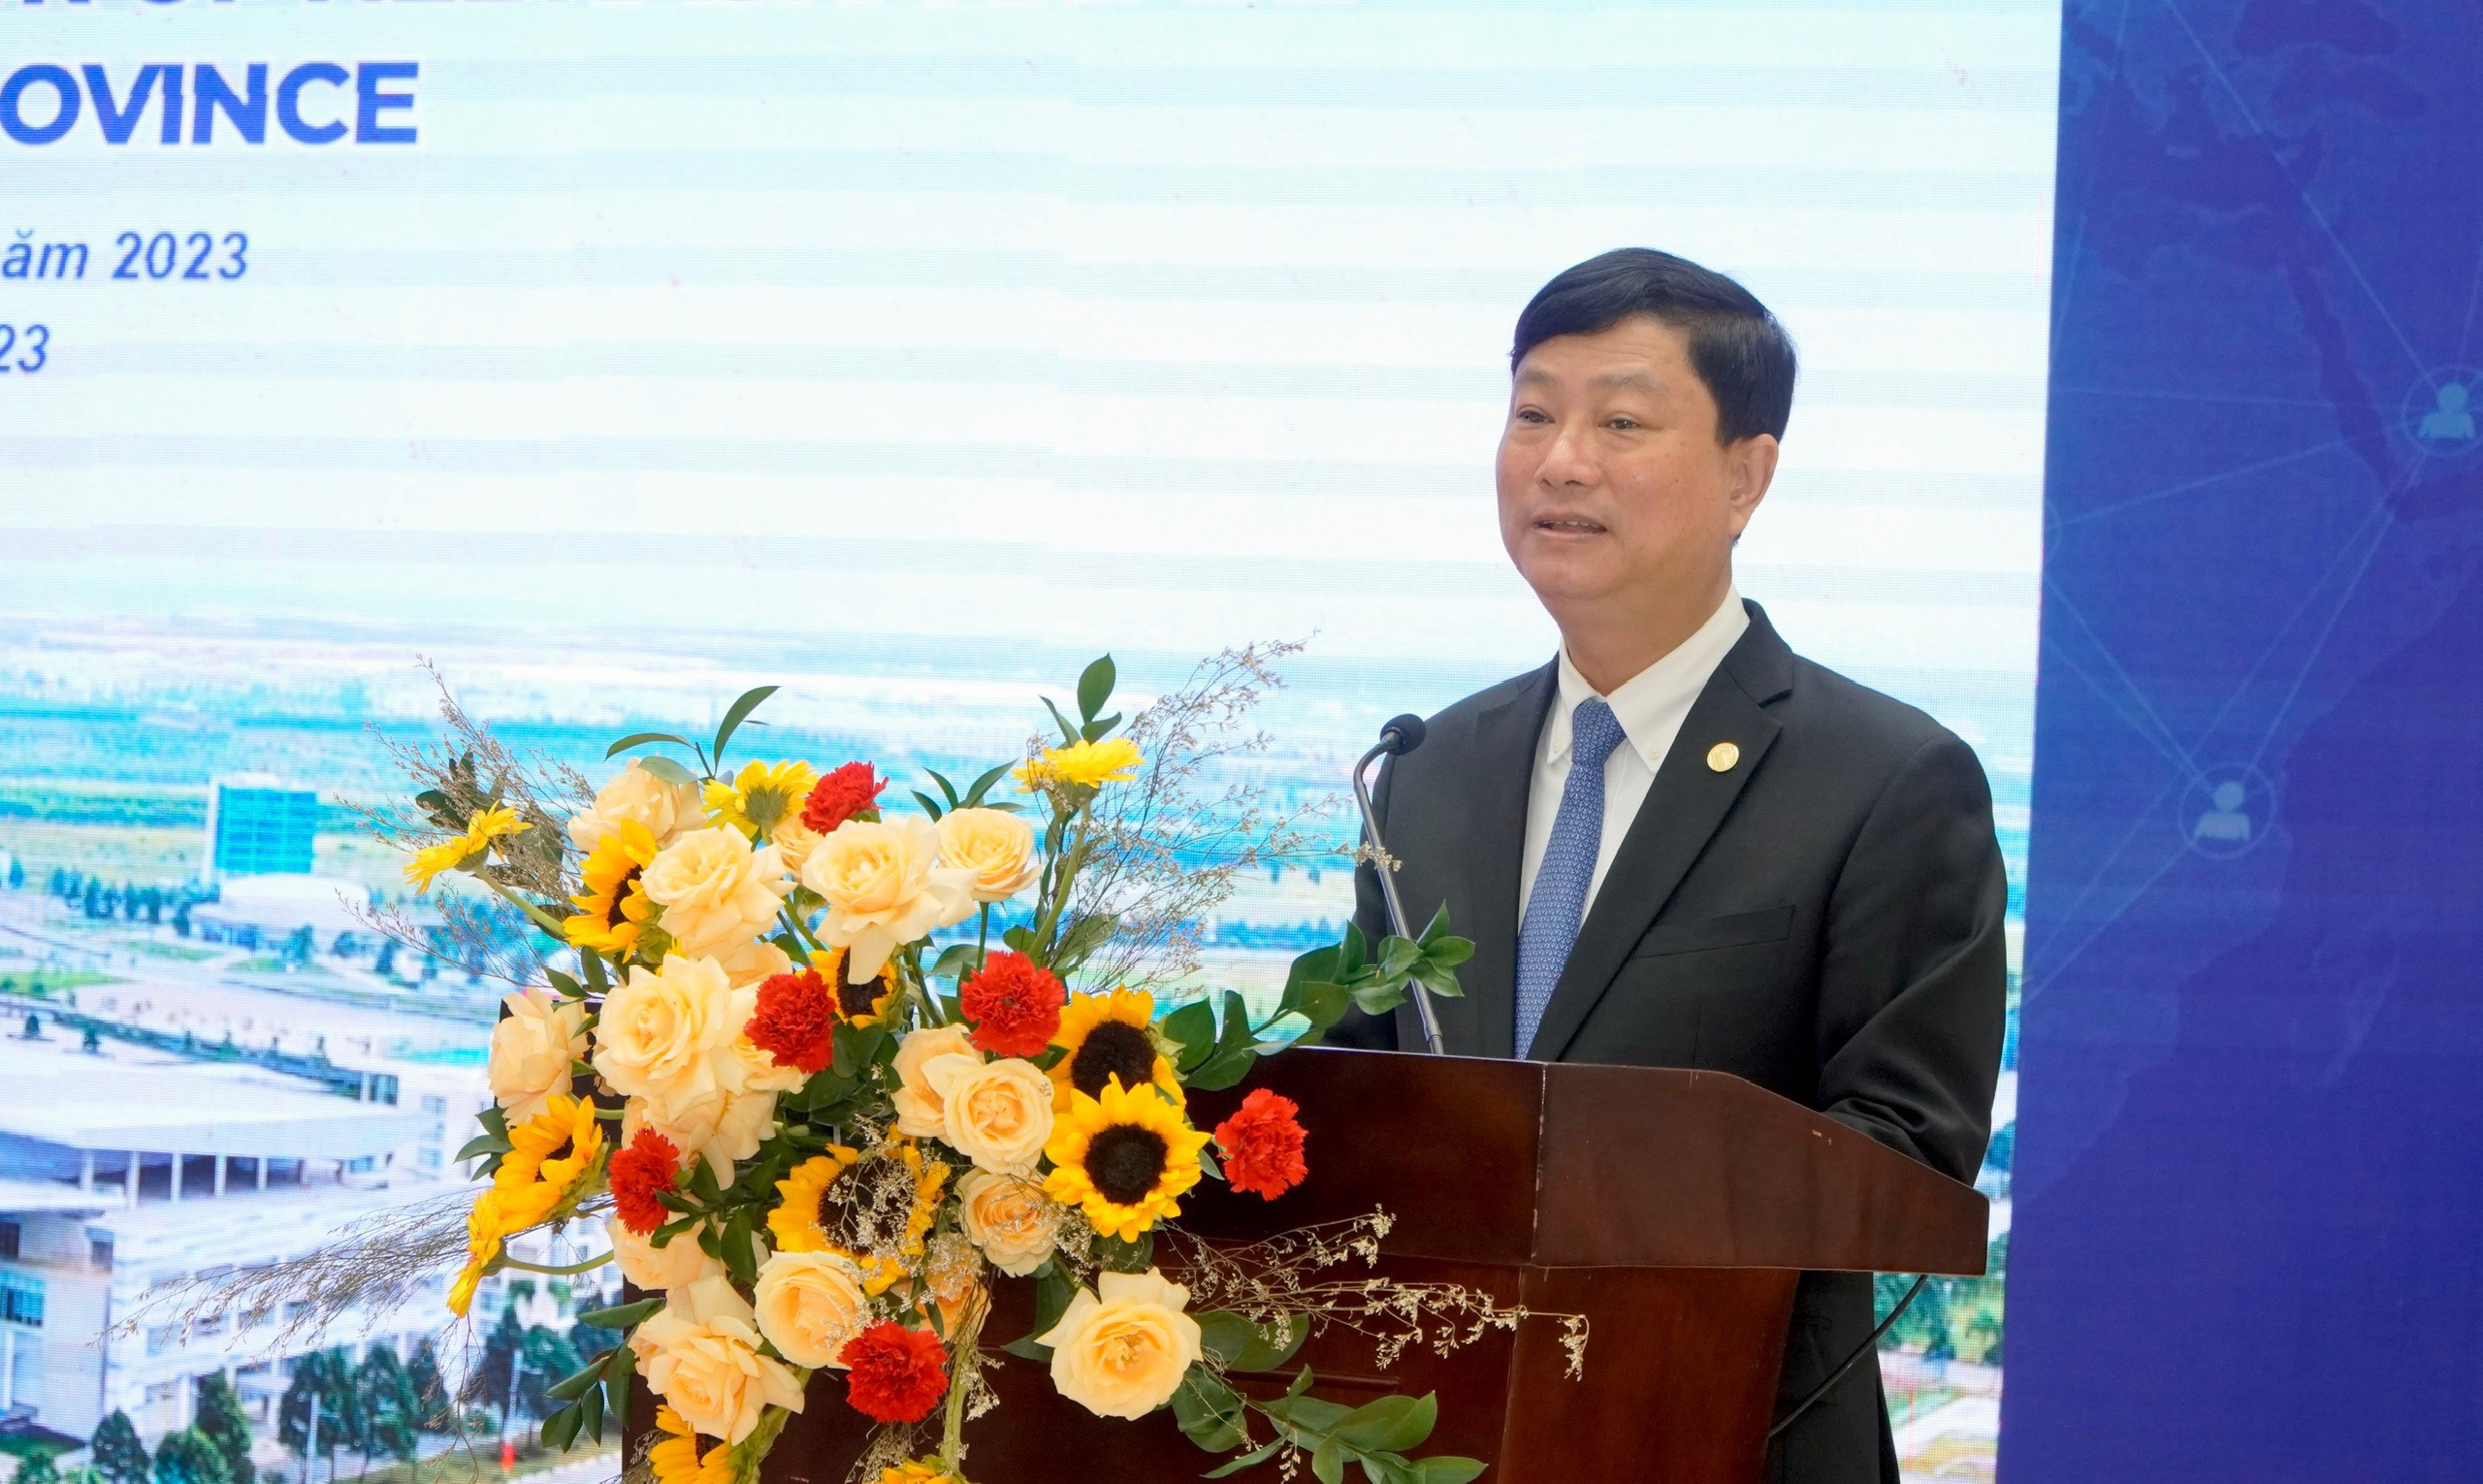 Đồng chí Võ Văn Minh - Chủ tịch UBND tỉnh Bình Dương phát biểu tại chương trình.